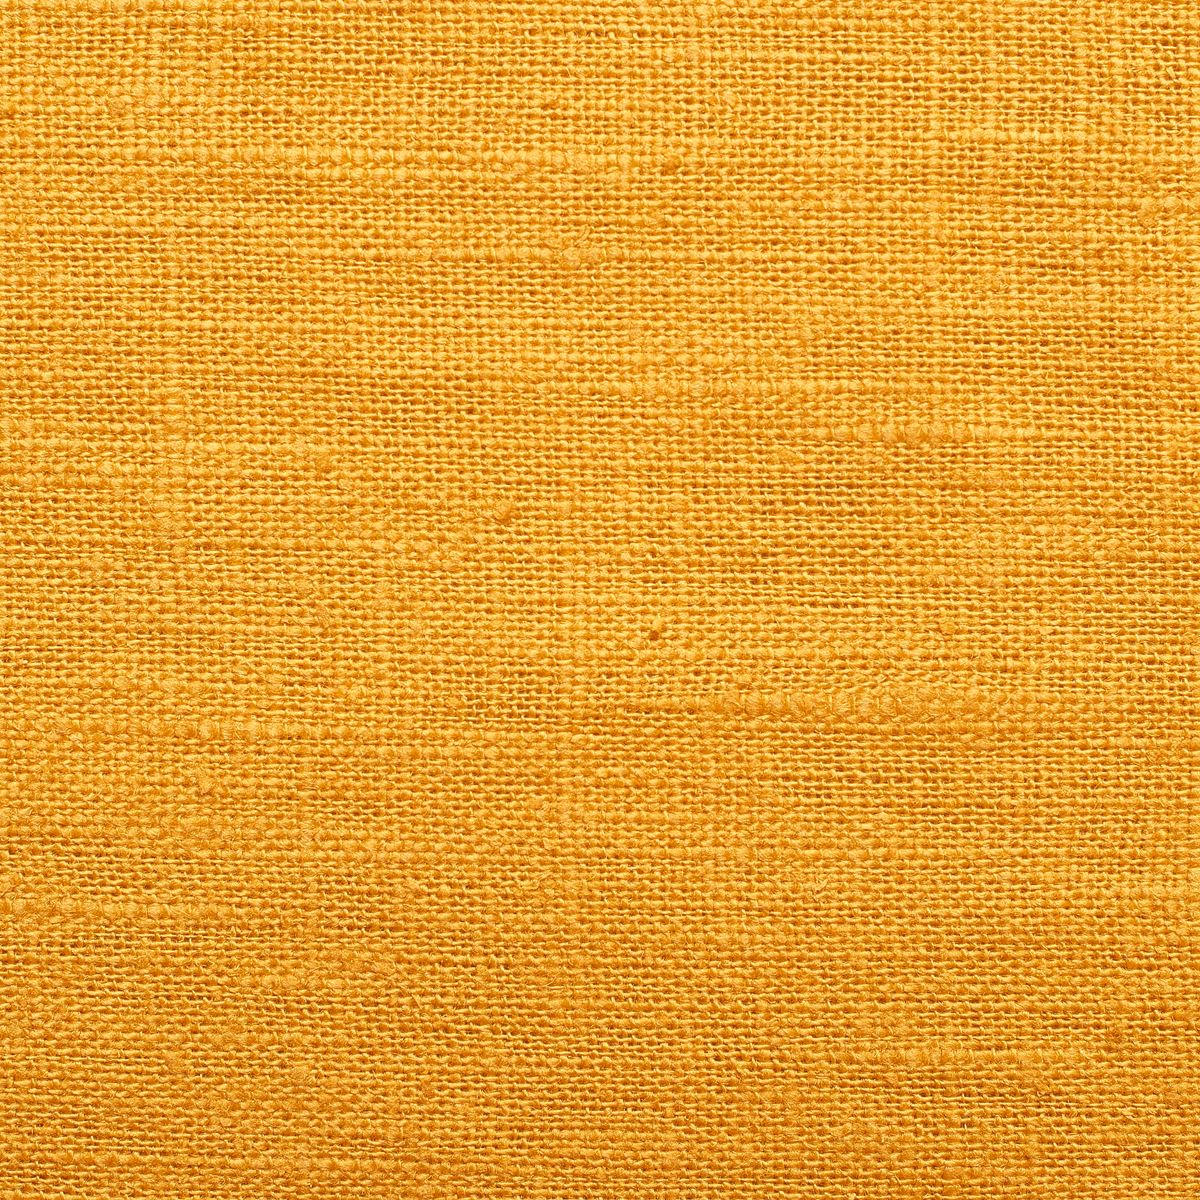 Amarelo-Ocre	